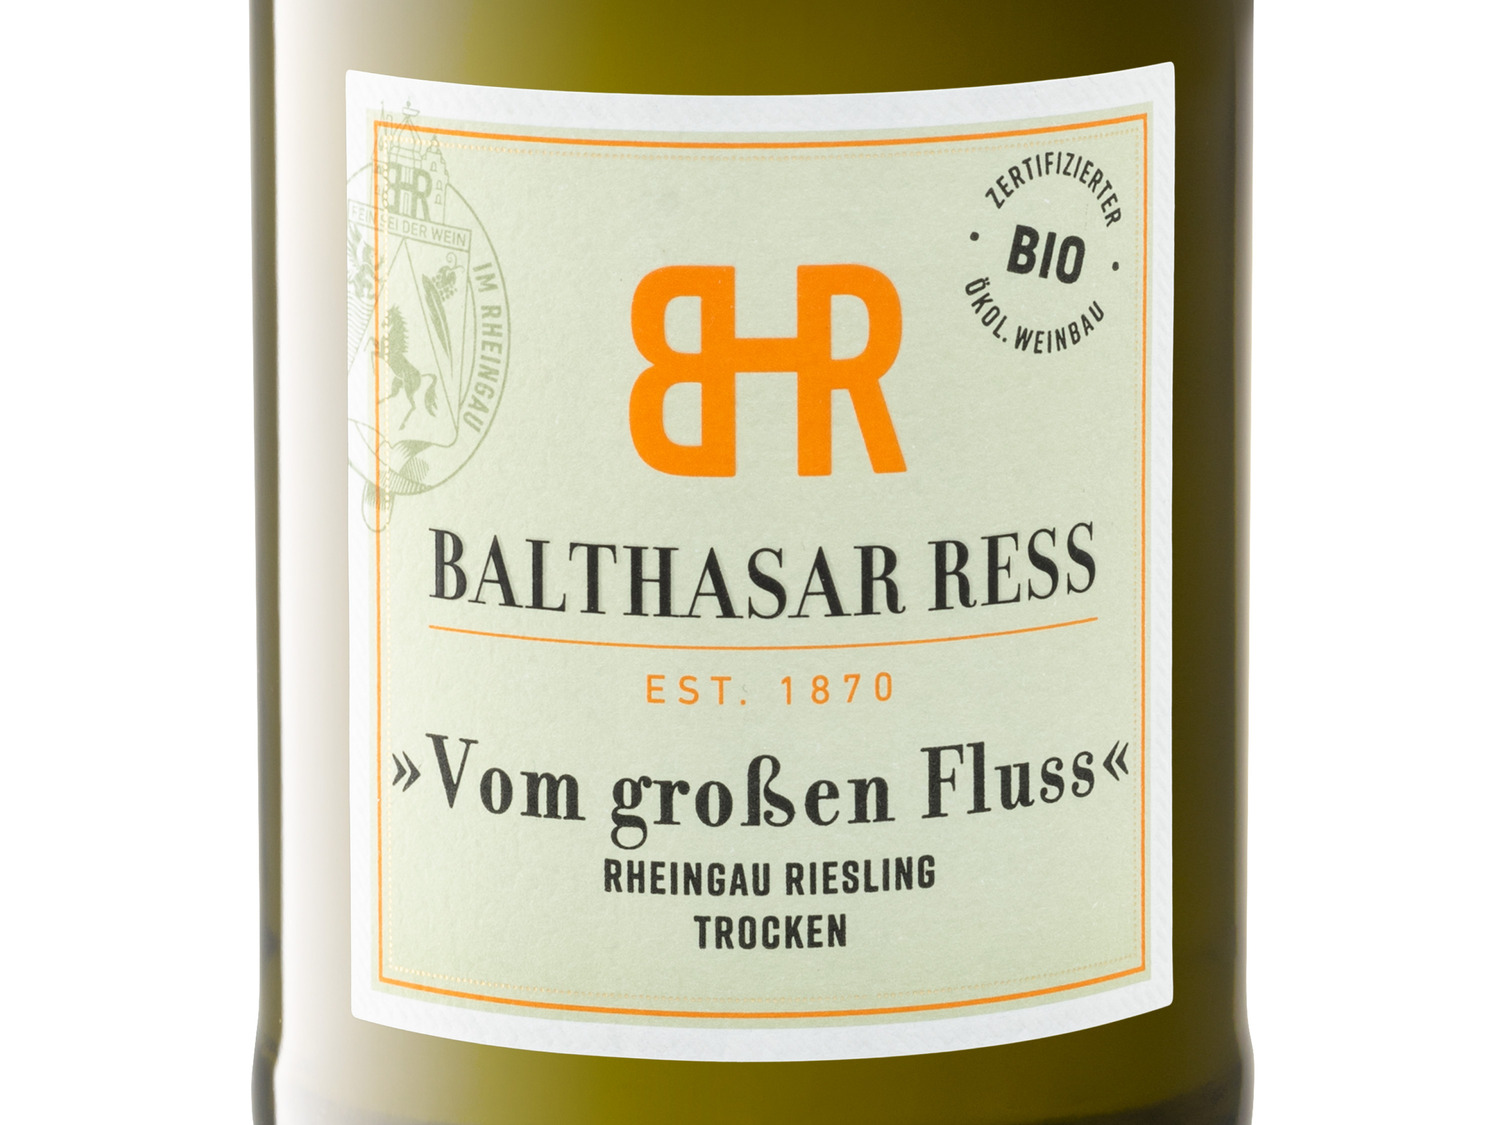 BIO Weingut großen Vom Rheingau Ress Balthasar R… Fluss